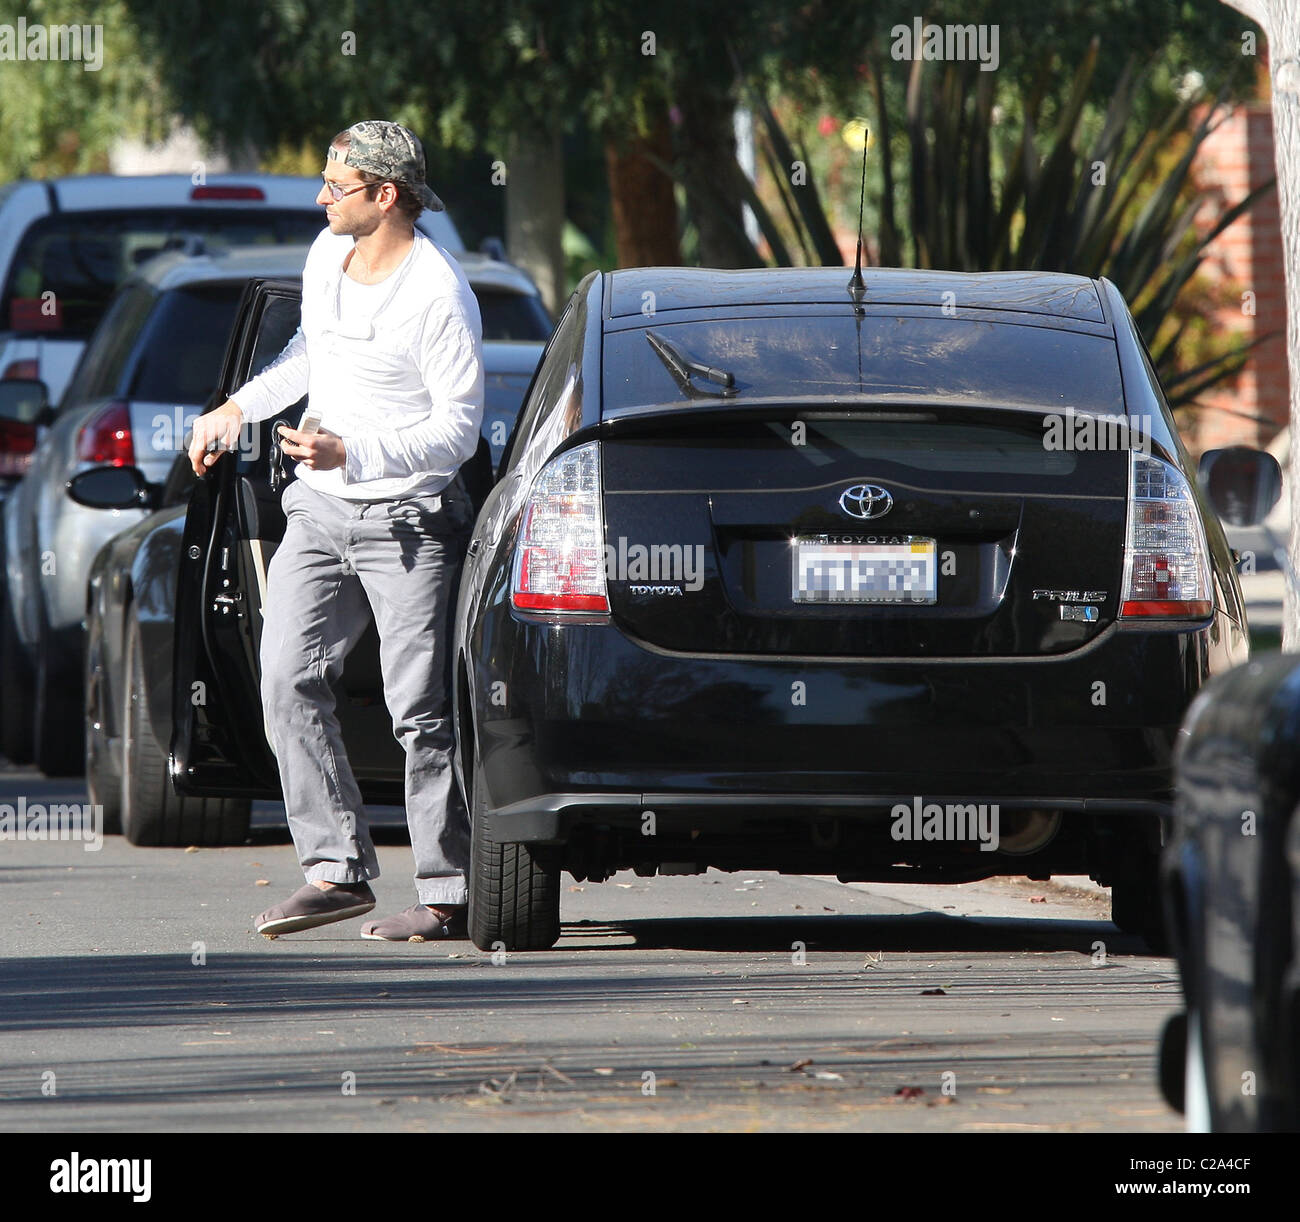 Bradley Cooper arrive à la maison dans sa voiture Toyota Prius, portant une  casquette et des chaussures type sleeper et teinte bleue Photo Stock - Alamy